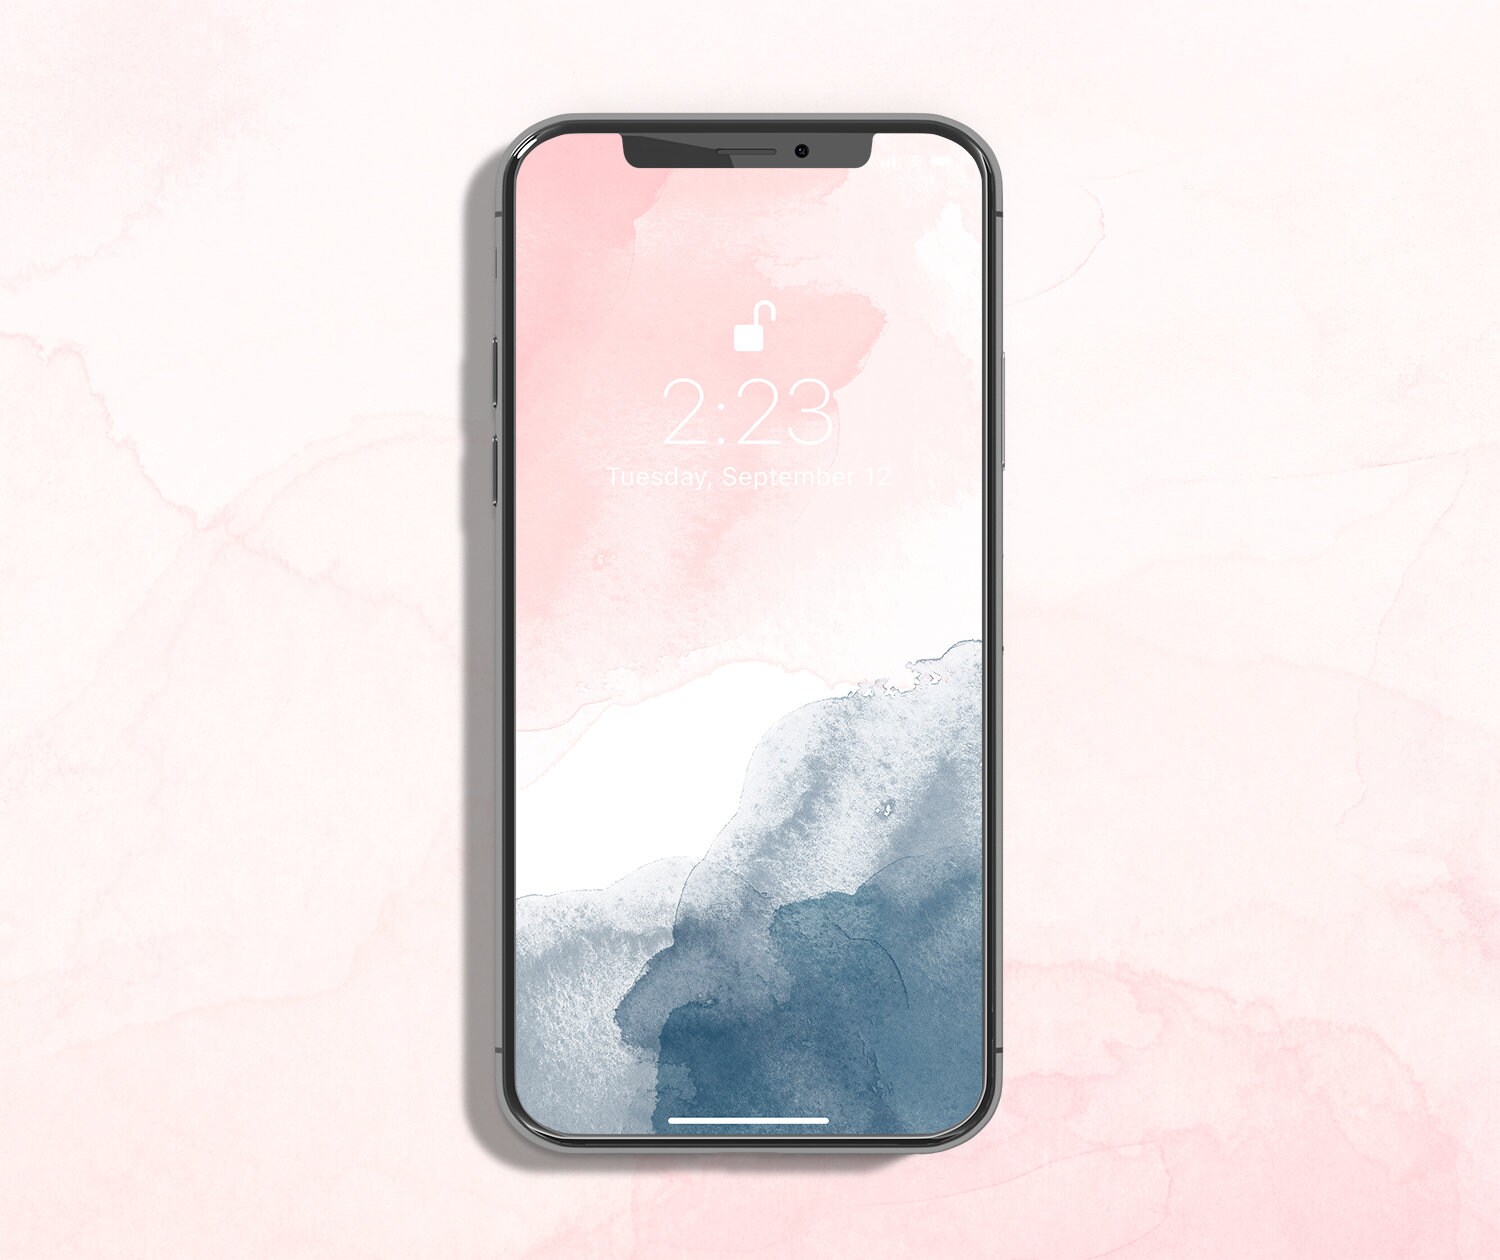 Với hình nền iPhone được thể hiện với màu blush pink và navy blue, bạn sẽ cảm thấy mình đang ngập tràn trong không gian nữ tính và đầy phong cách. Tông màu làm tôn lên vẻ đẹp tự nhiên của thiết bị, giúp bạn tha hồ lựa chọn phong cách thể hiện bản thân.